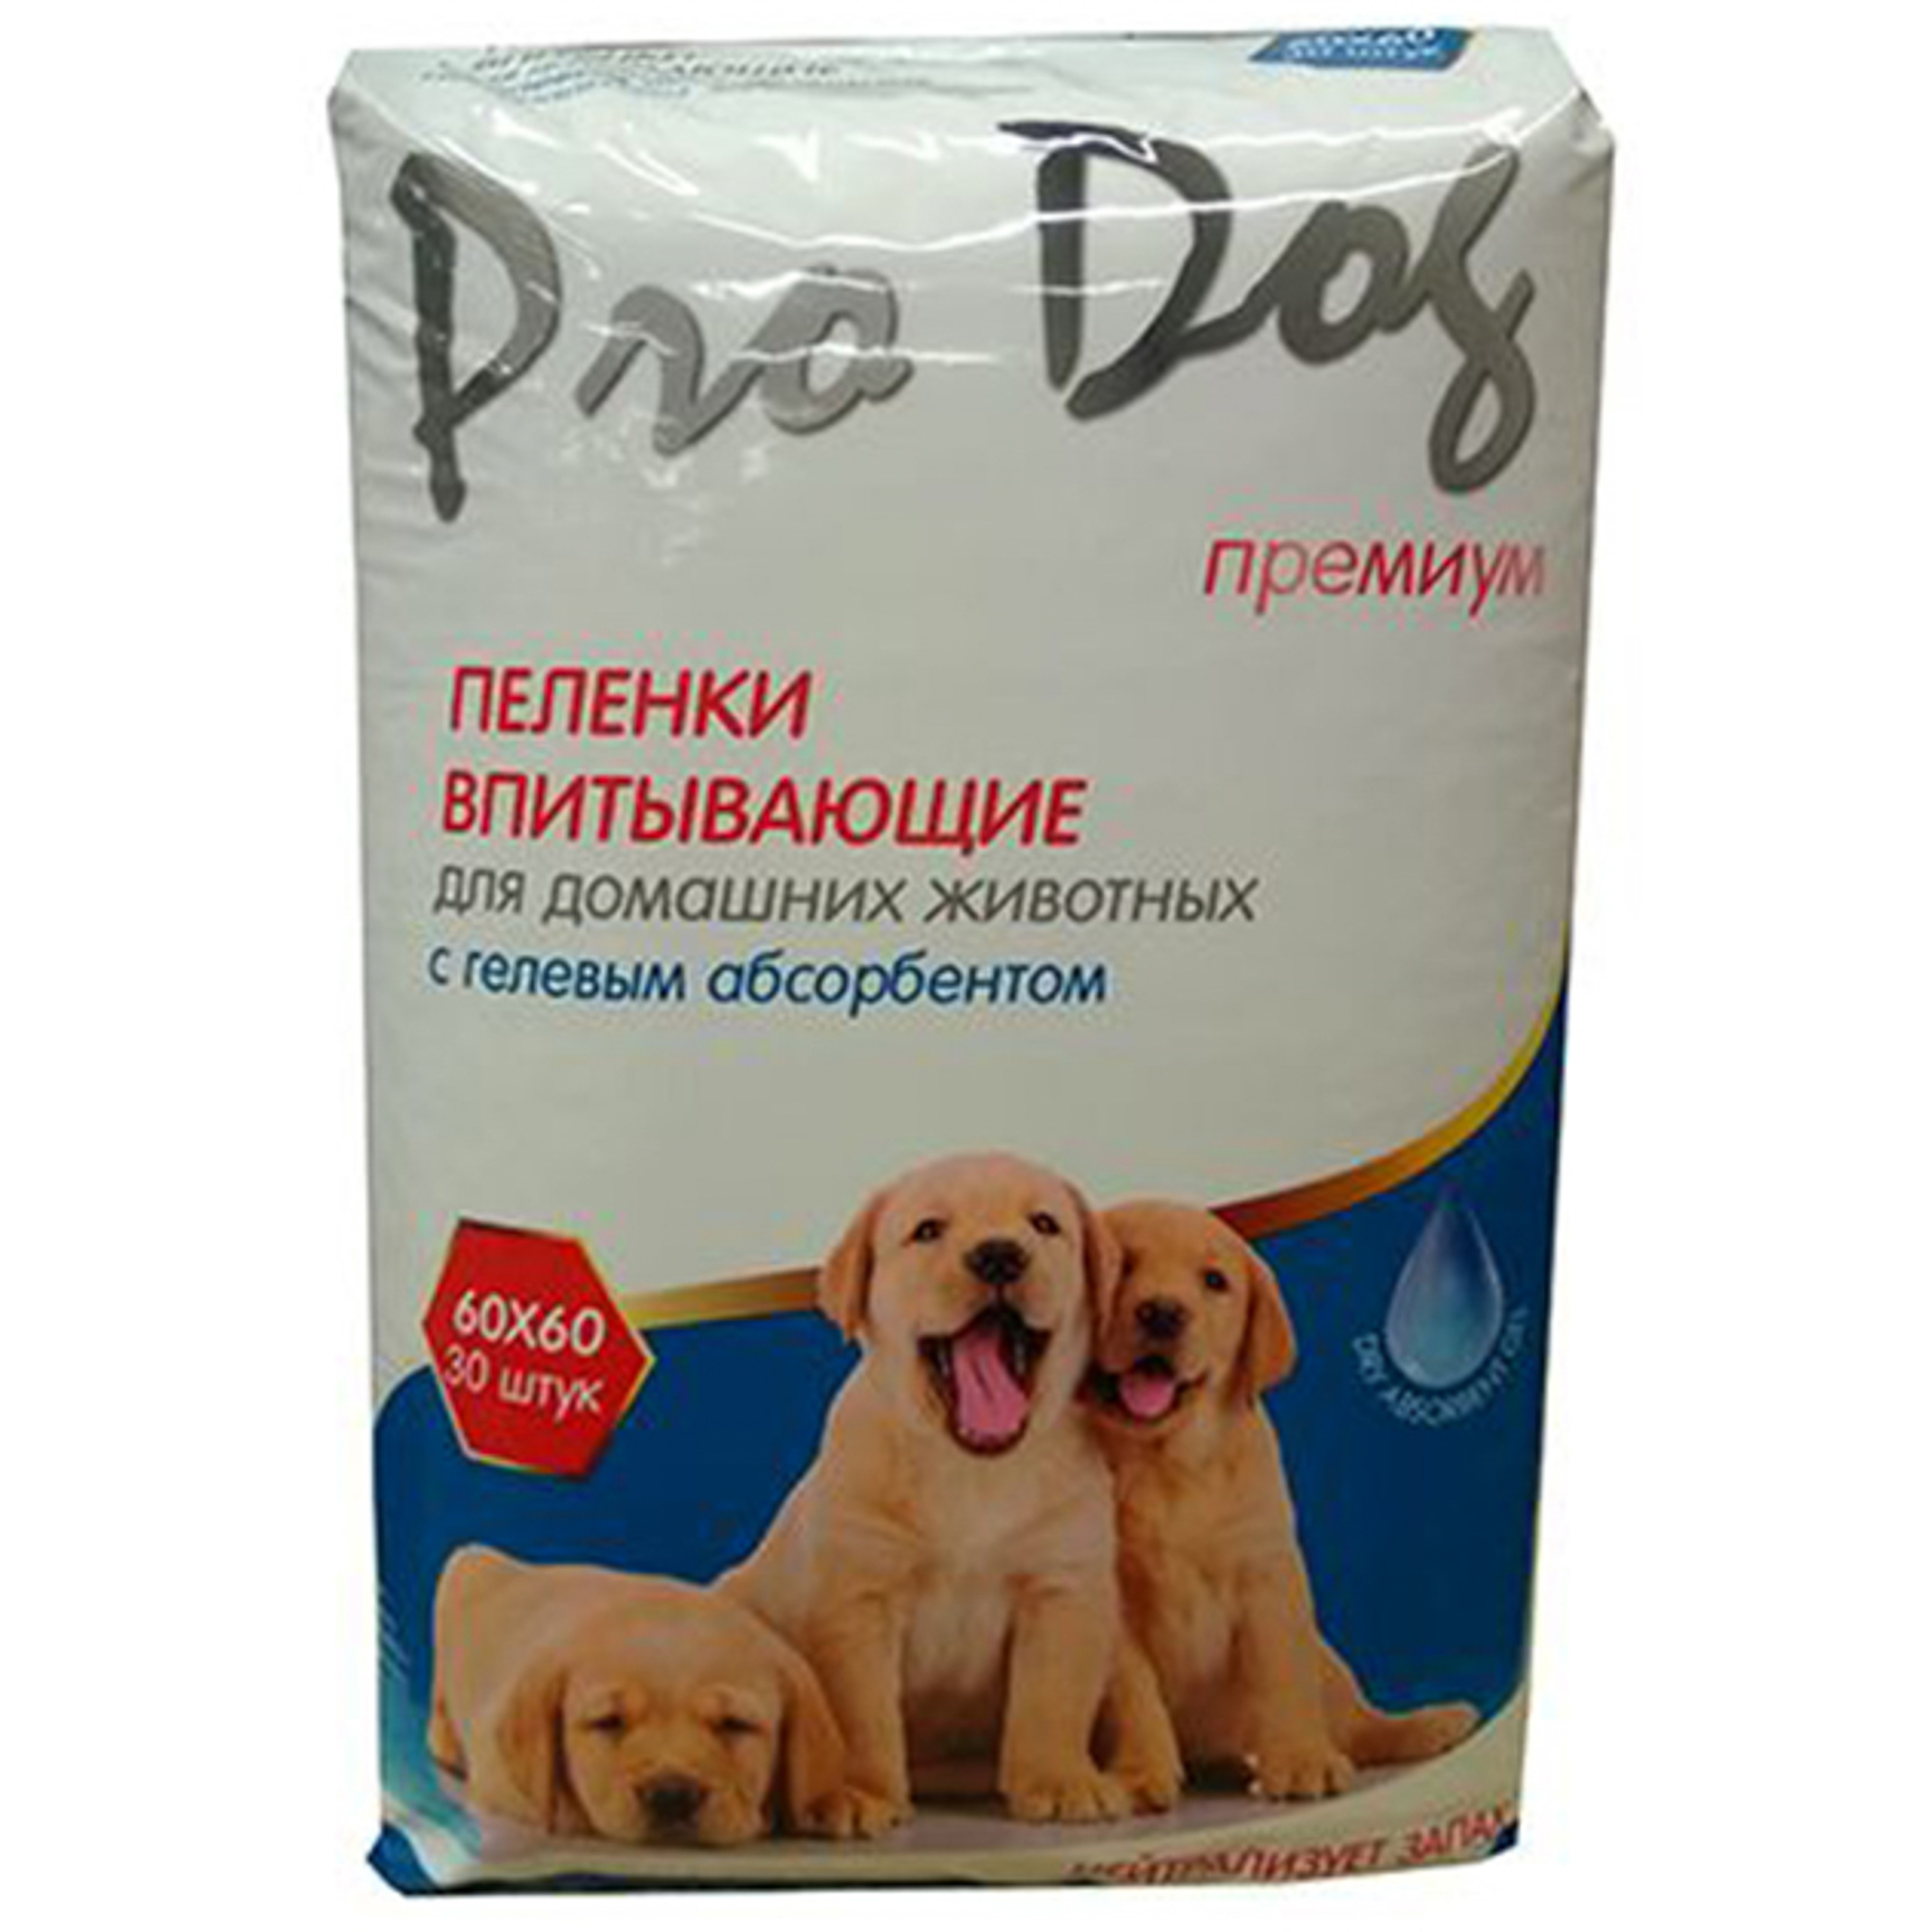 Пеленки для кошек и собак Pro Dog с гелевым абсорбентом 60х60 см 30 шт, размер 19x14x26 см